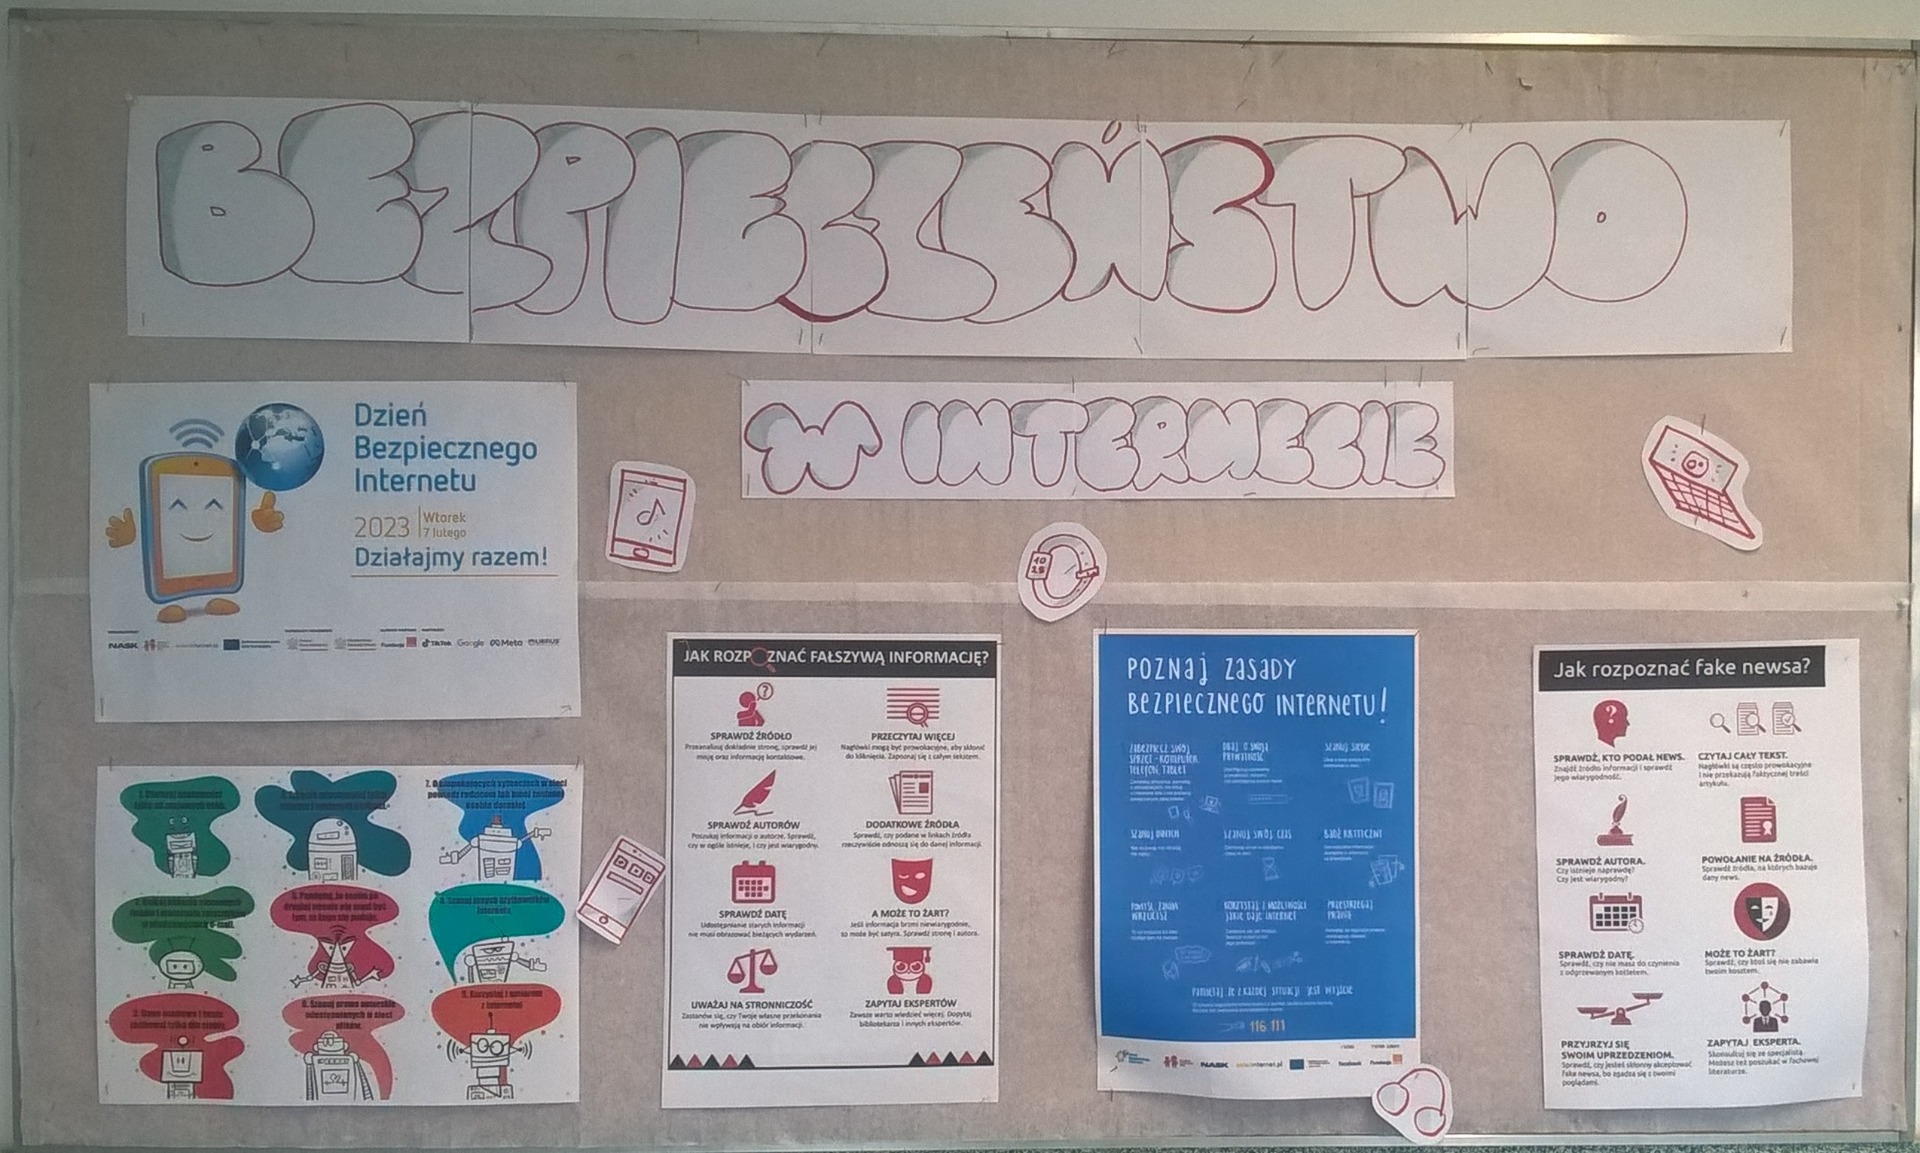 Gazetka na korytarzu szkolnym pt. Bezpieczeństwo w internecie, na której znajdują się plakaty i infografiki informujące o bezpiecznym posługiwaniu się treściami w wirtualnym świecie